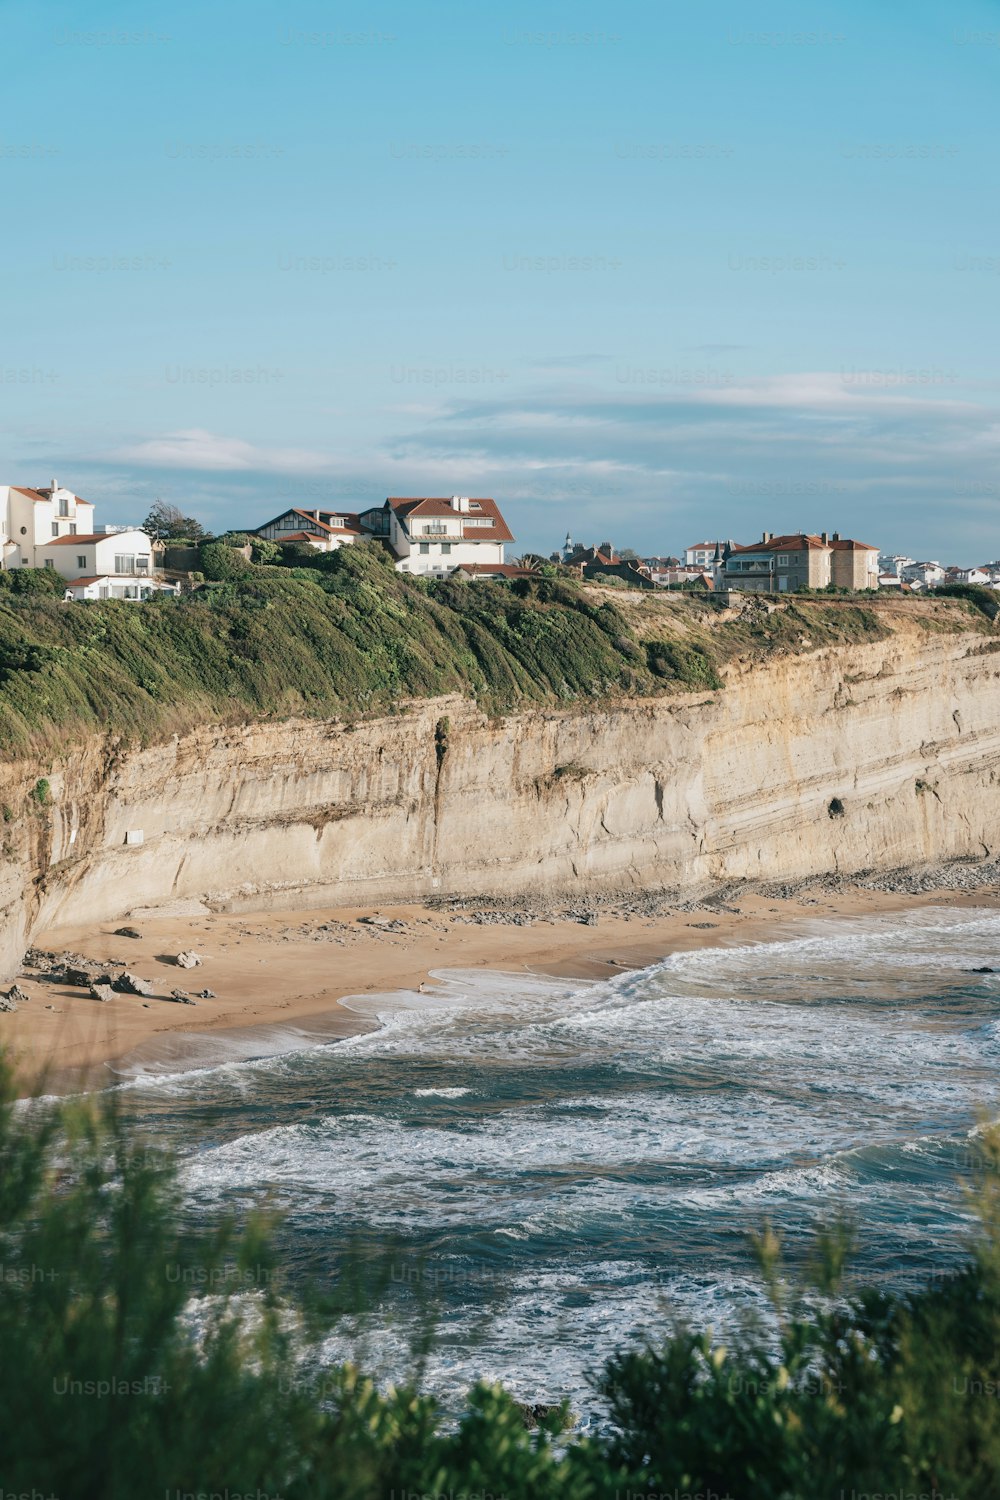 una vista di una spiaggia con case sulla scogliera